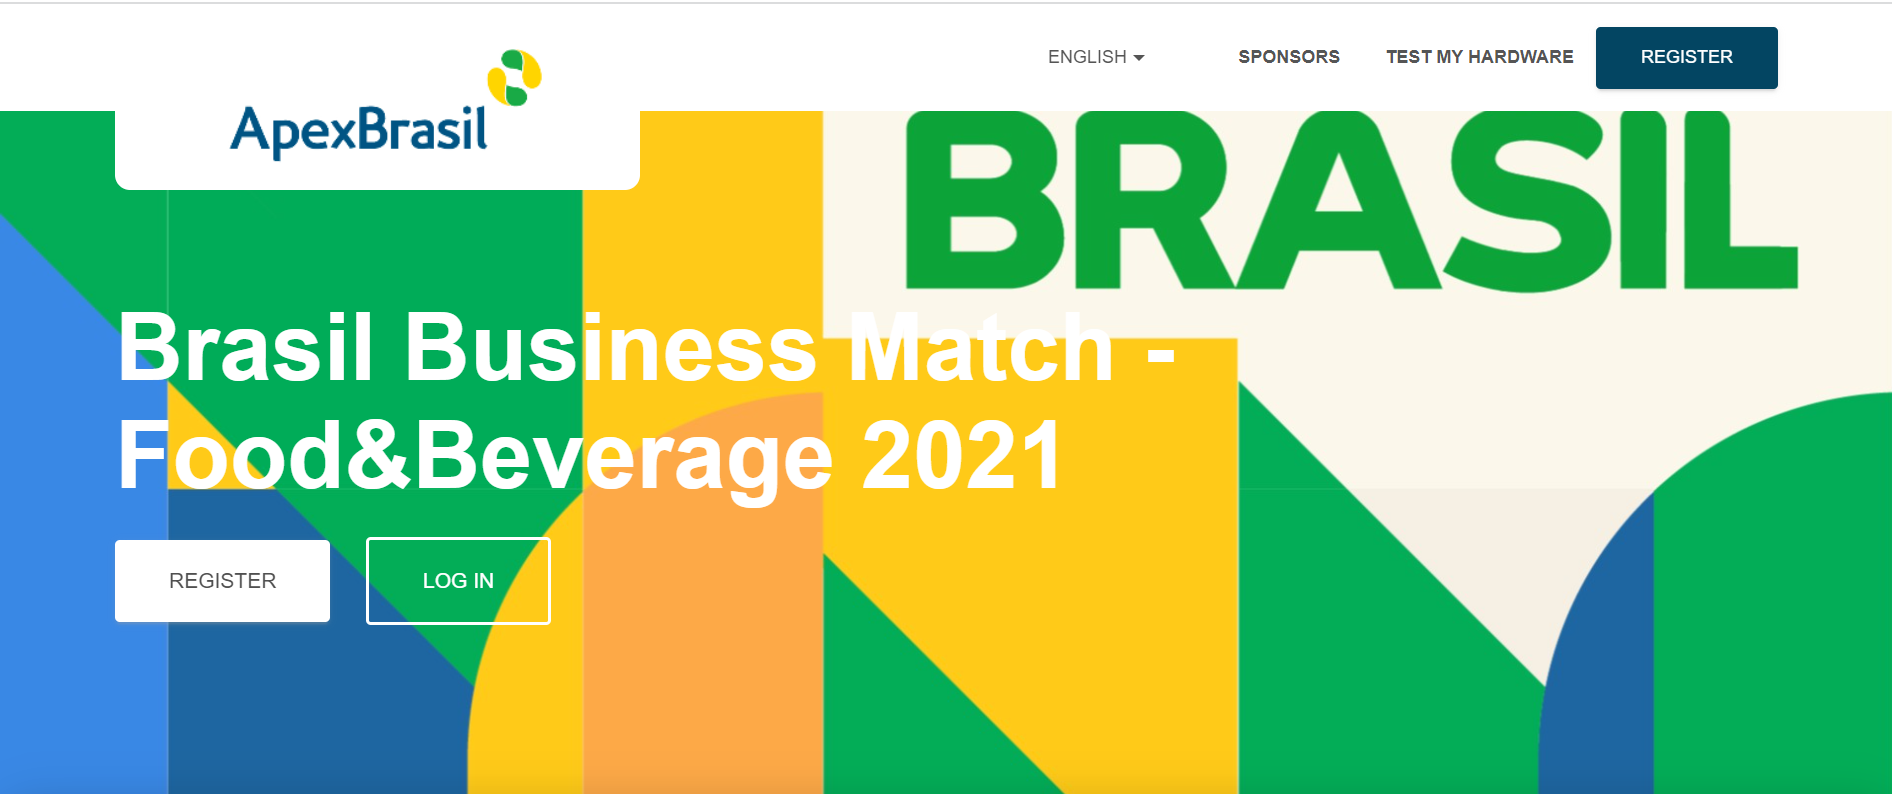 Apex-Brasil lança plataforma de relacionamento entre empresas brasileiras e internacionais